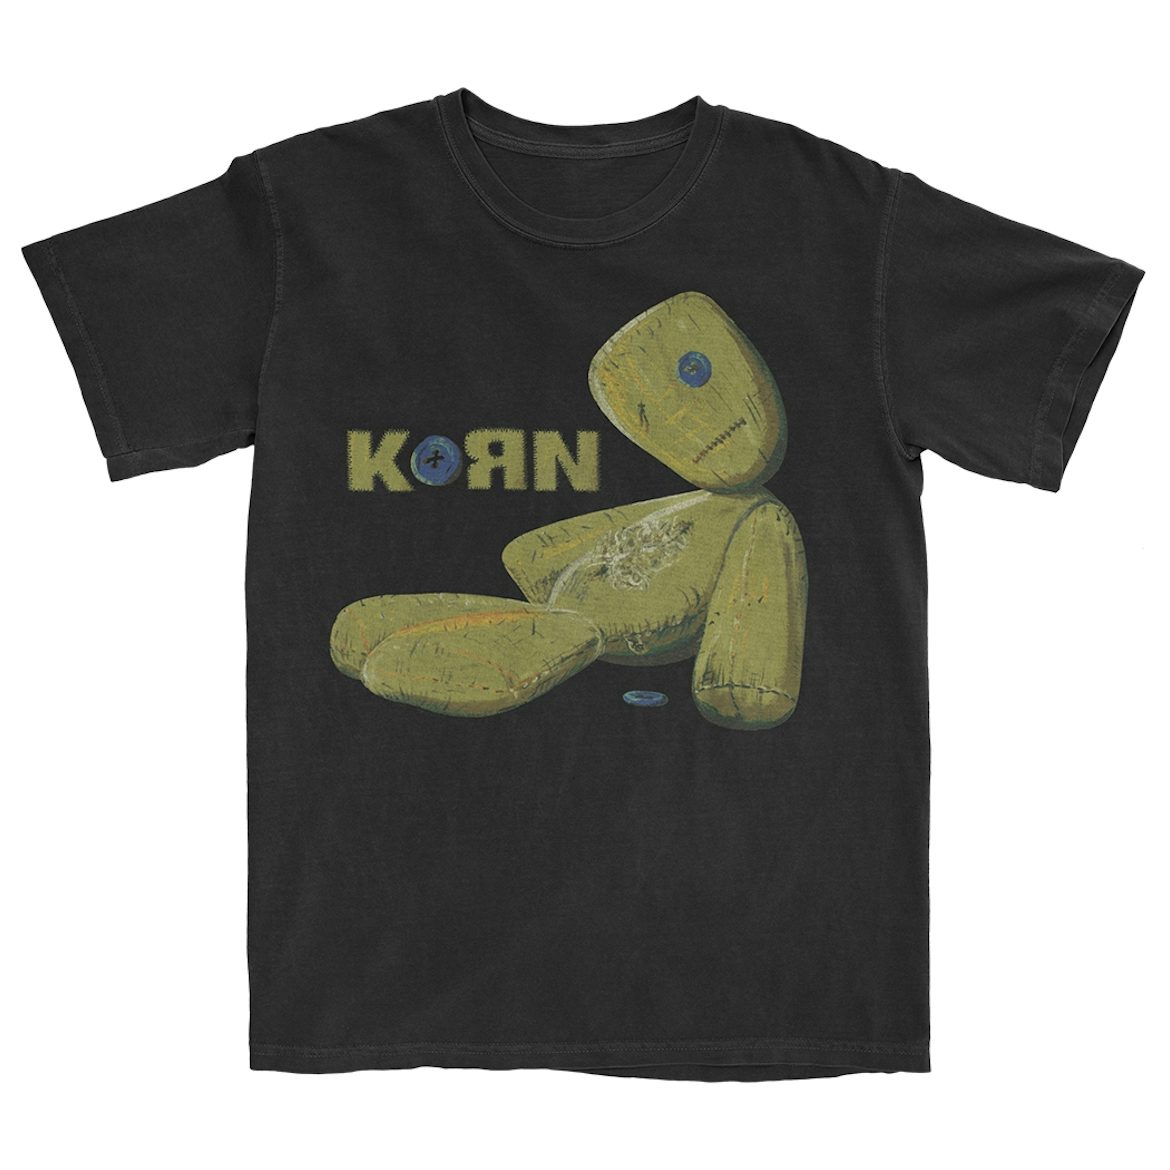 KoRn Store Official Merch & Vinyl